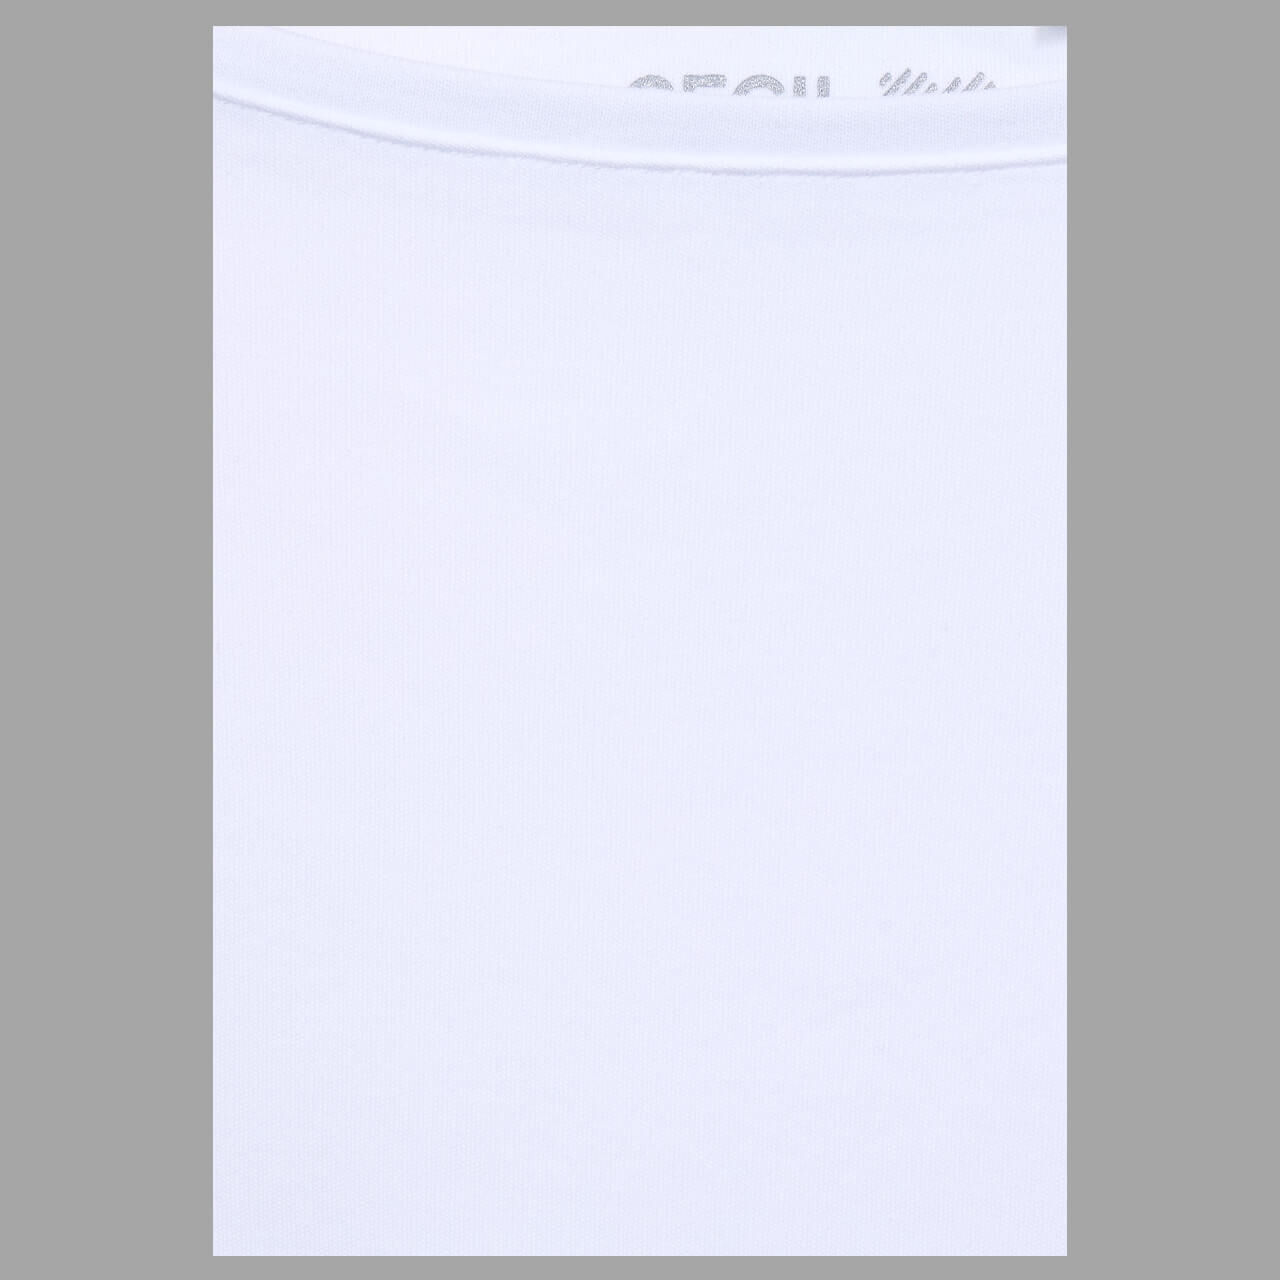 Cecil Basic Boatneck 3/4 Arm Shirt für Damen in Weiß, FarbNr.: 10000